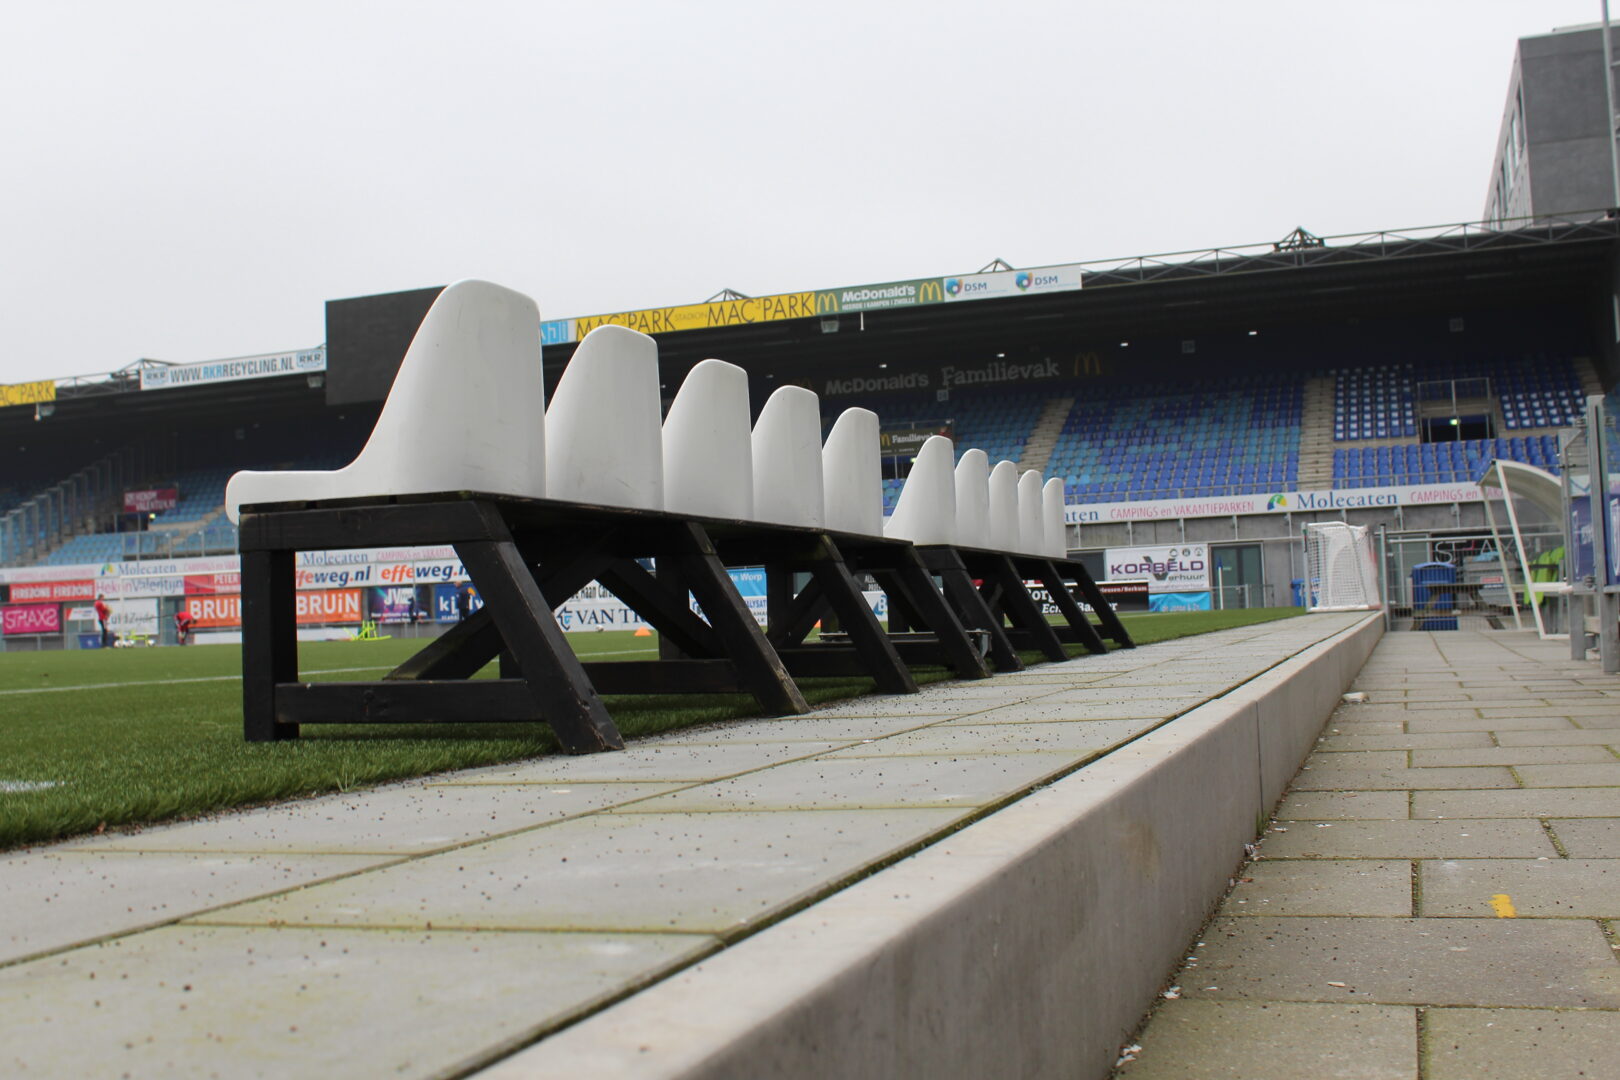 Bosch Beton - Keerwanden verhogen kunstgrasveld van PEC Zwolle